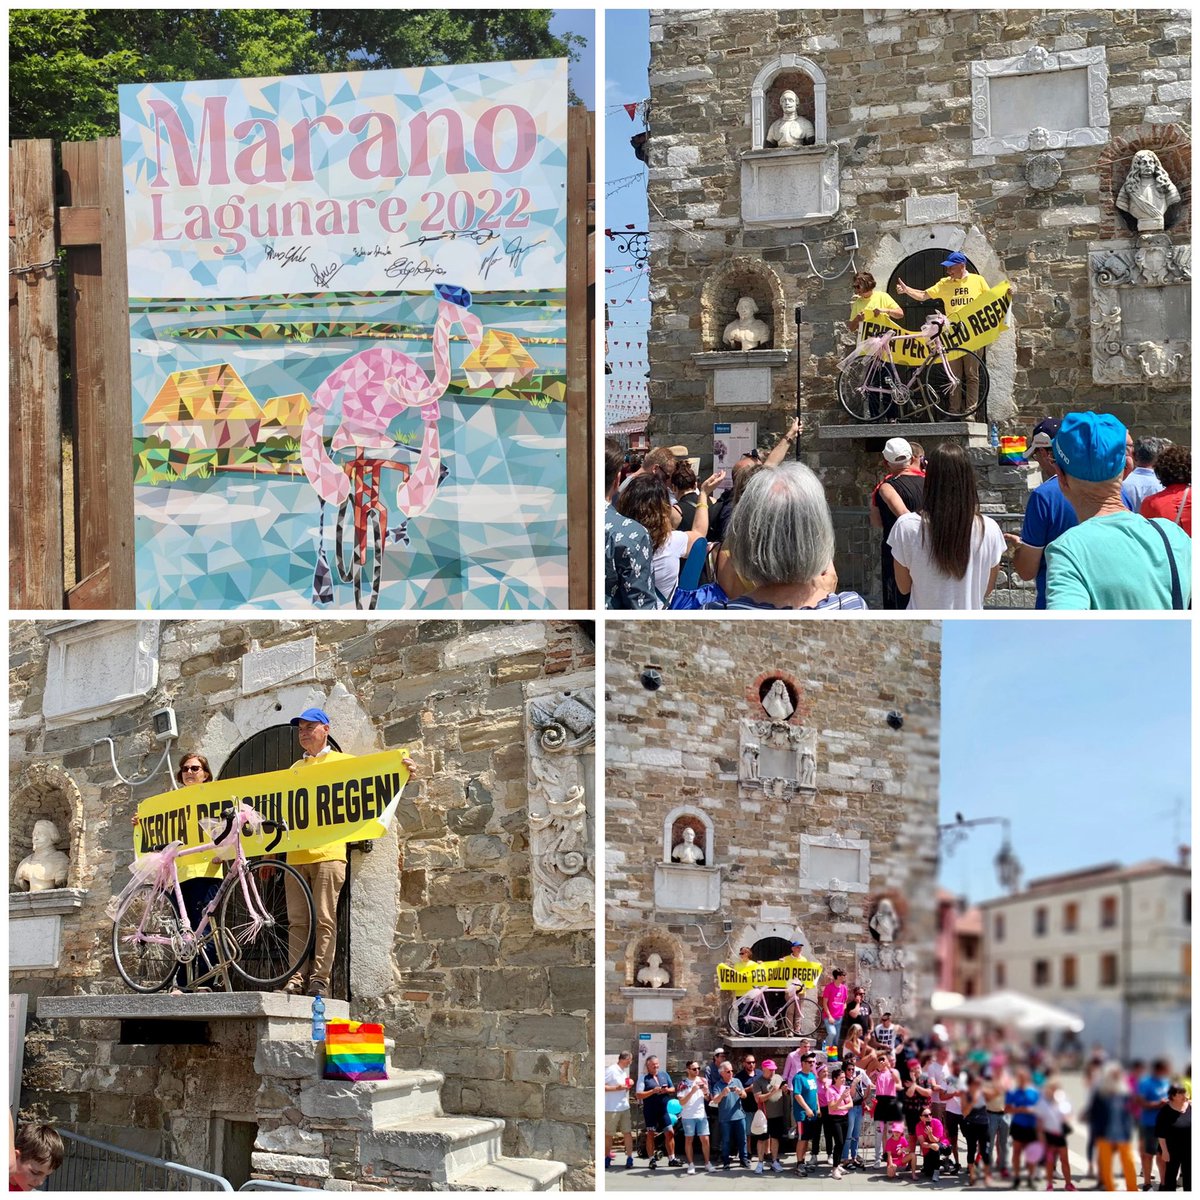 A #Marano tutto pronto per il #Giro #GiroDItalia #Giro105 #27maggio anche lo striscione #veritaperGiulioRegeni